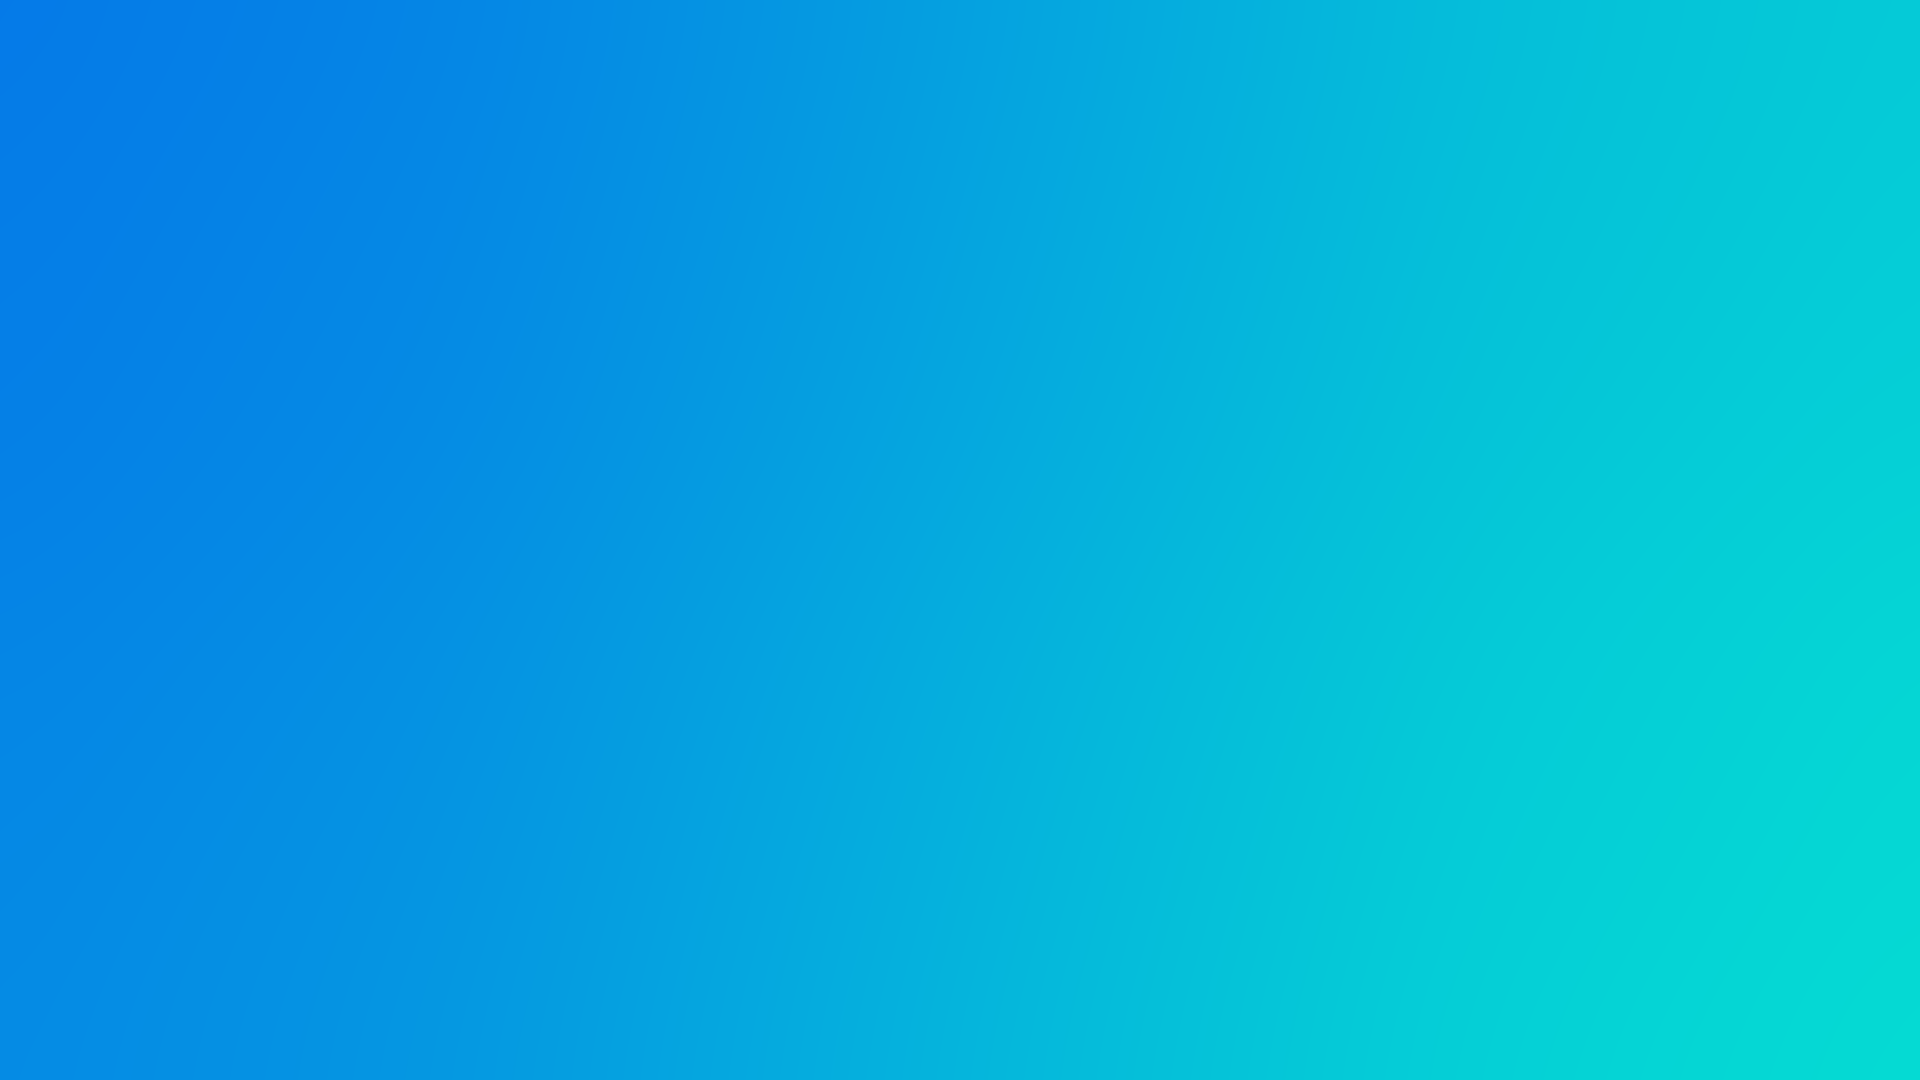 General 1920x1080 blue blurred gradient blue background simple background cyan cyan background texture